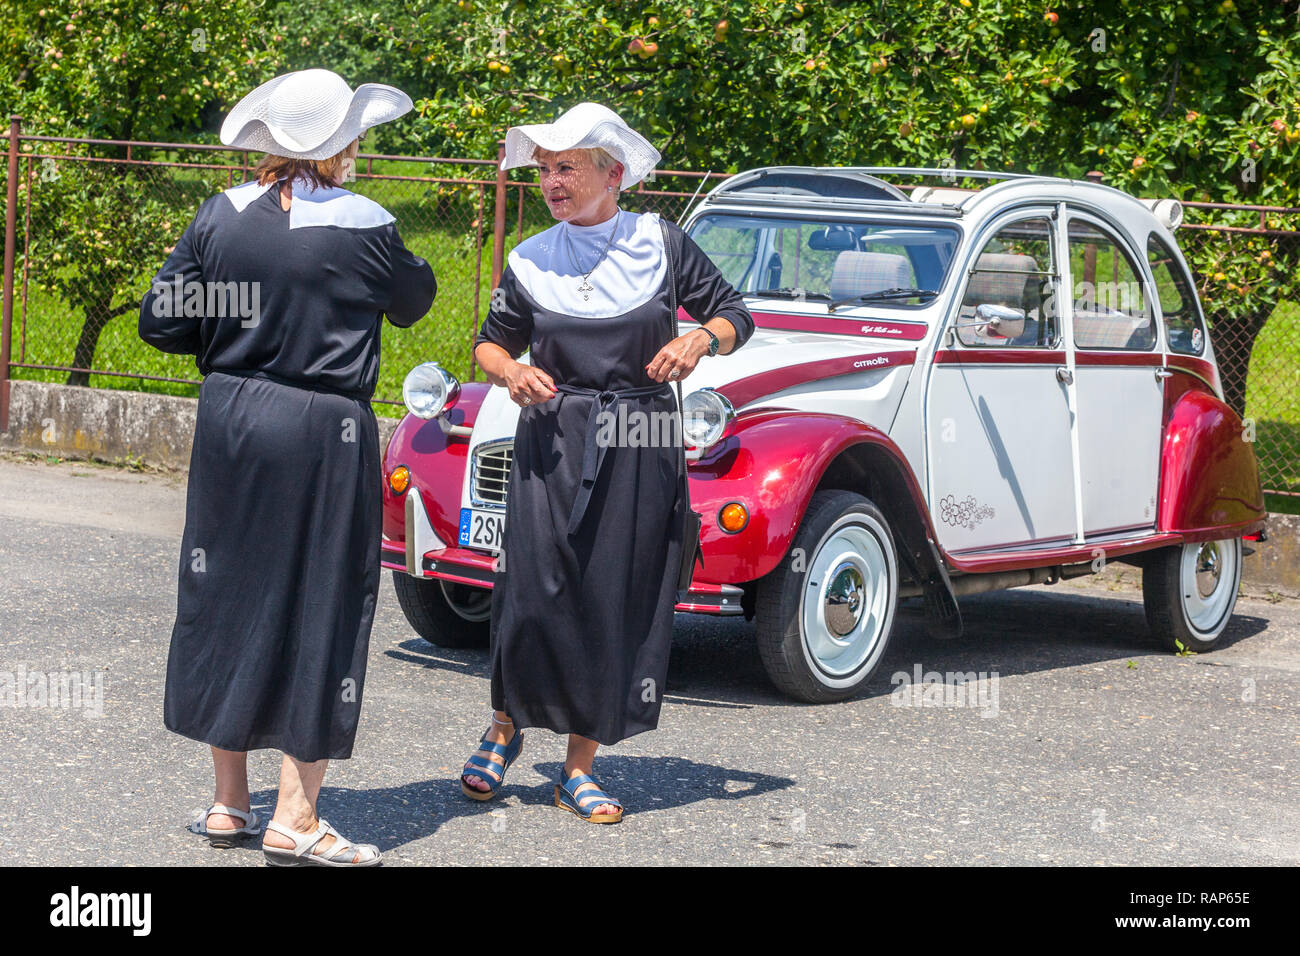 Deux femmes dans un costume de nonne, voiture vétéran Citroën 2CV oldtimer vieille femme habillée comme des nonnes, les gens actifs Banque D'Images